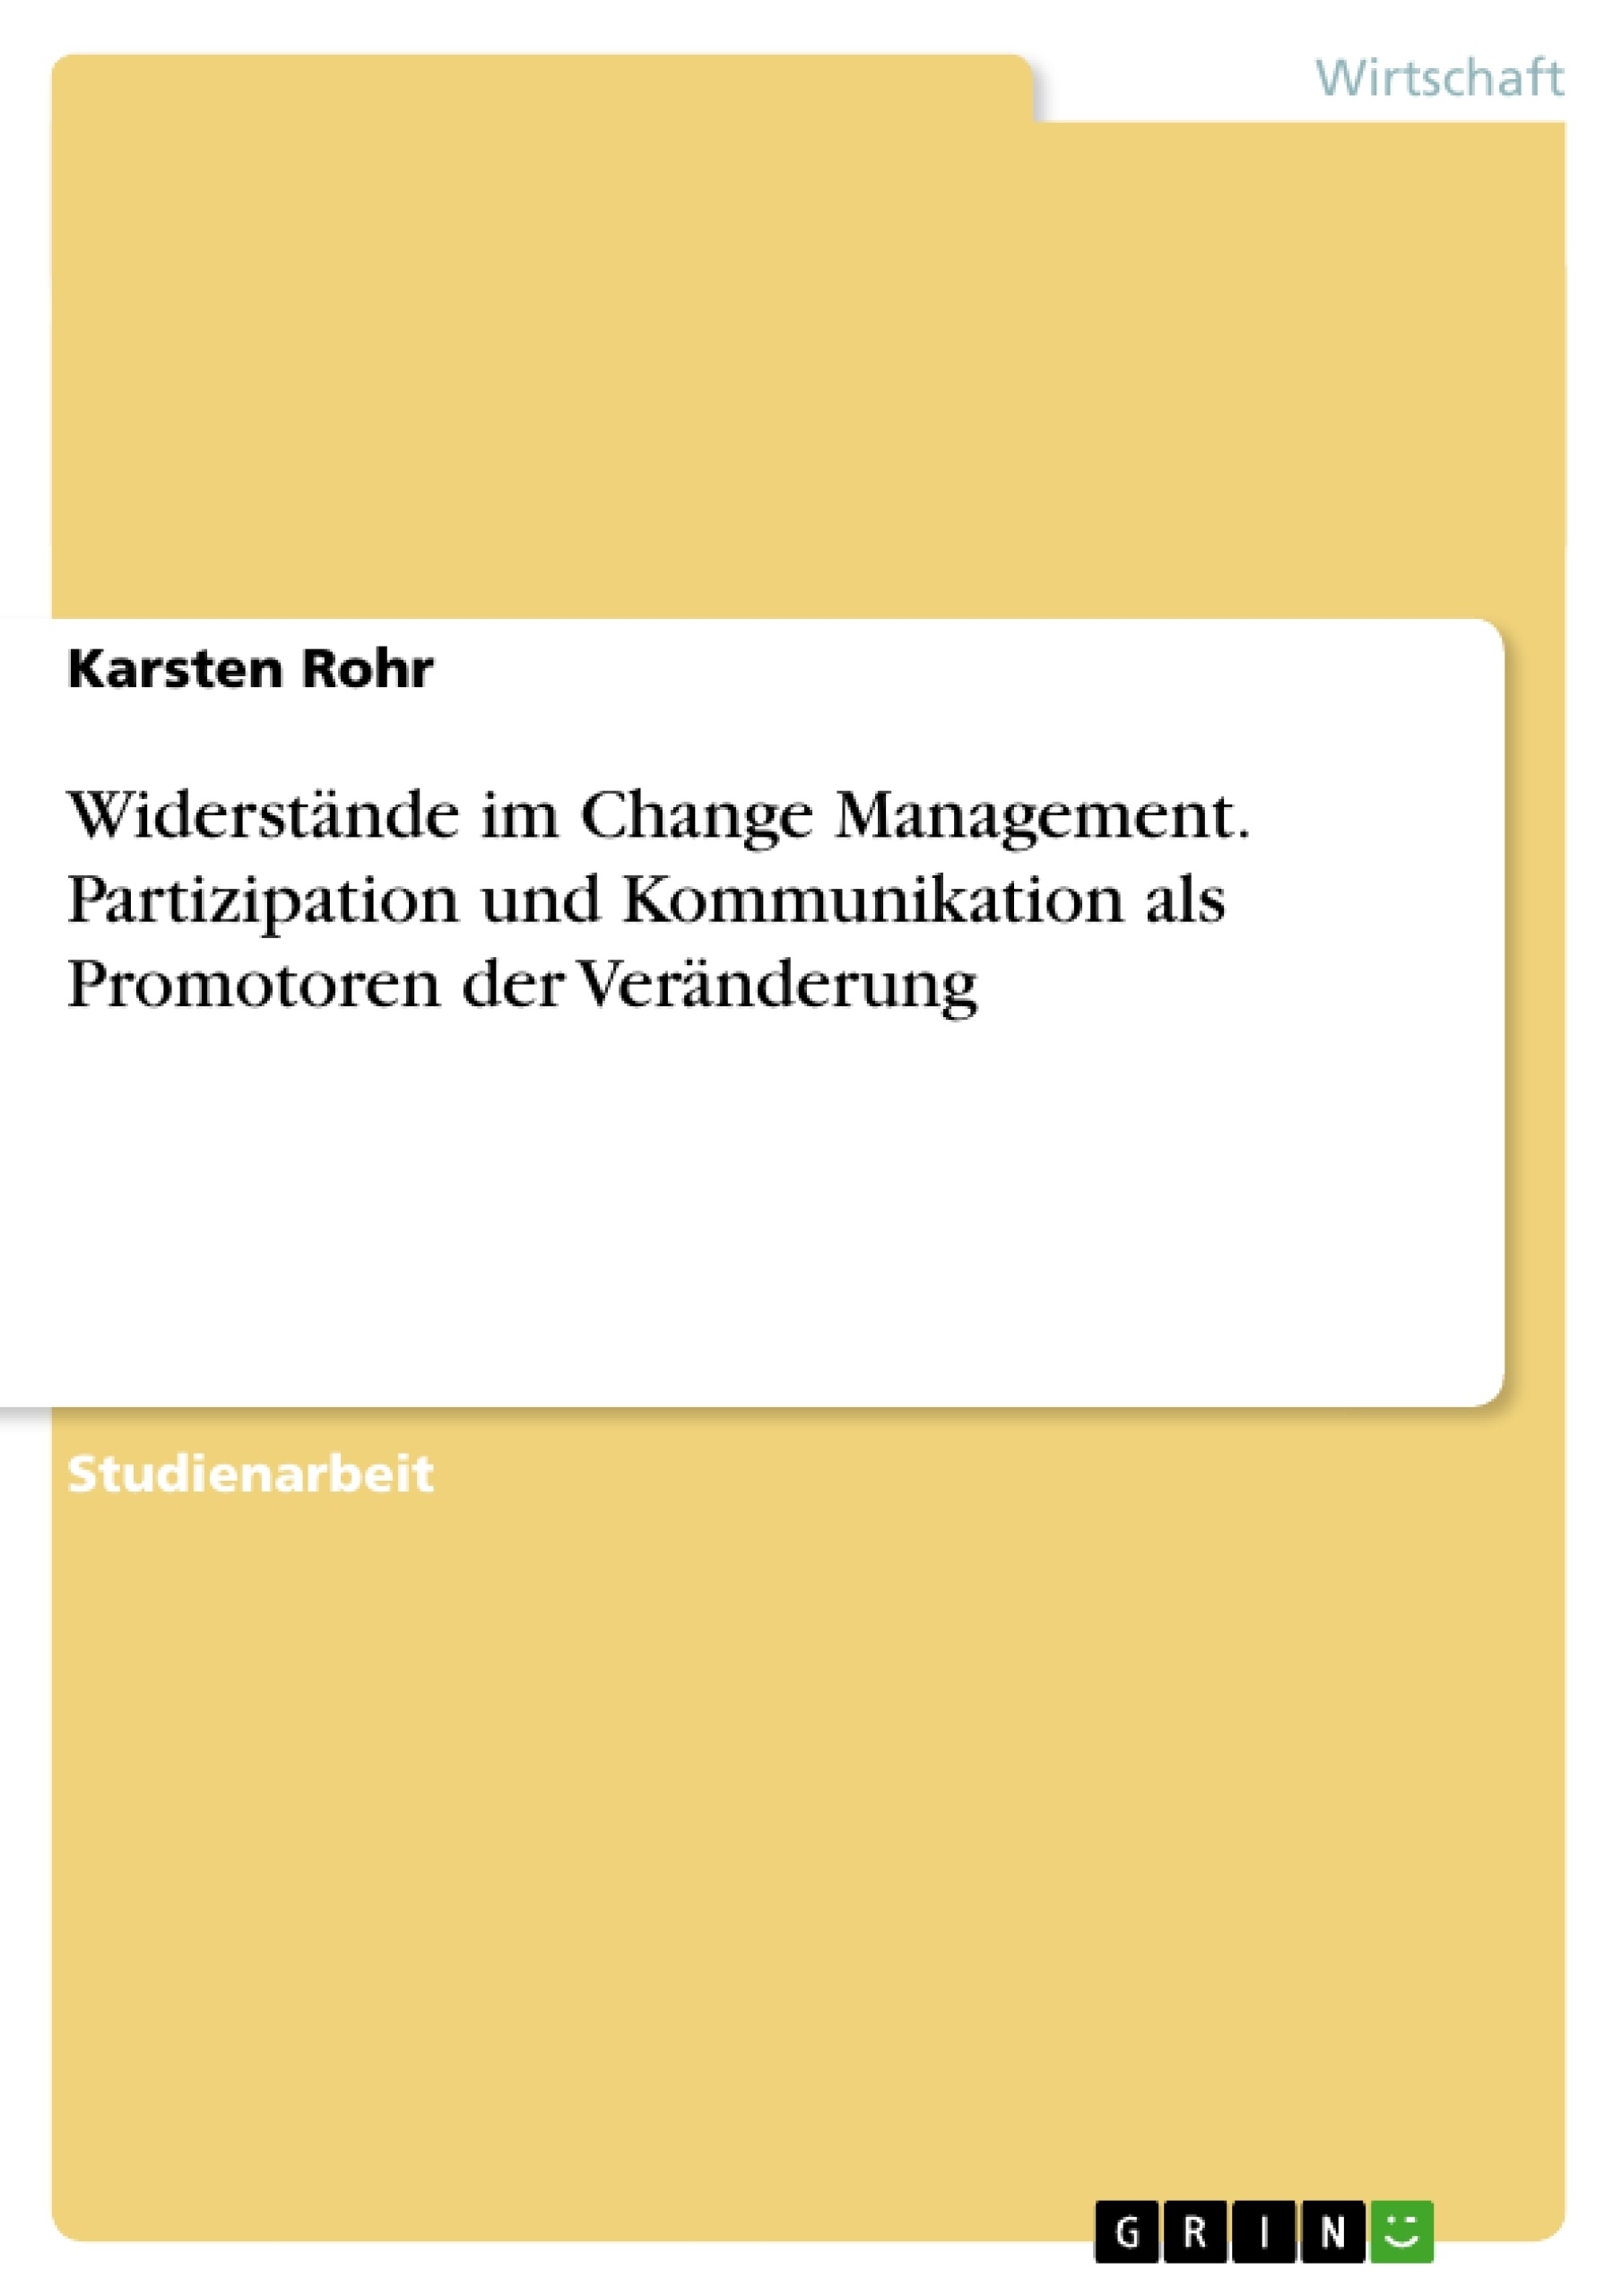 Title: Widerstände im Change Management. Partizipation und Kommunikation als Promotoren der Veränderung